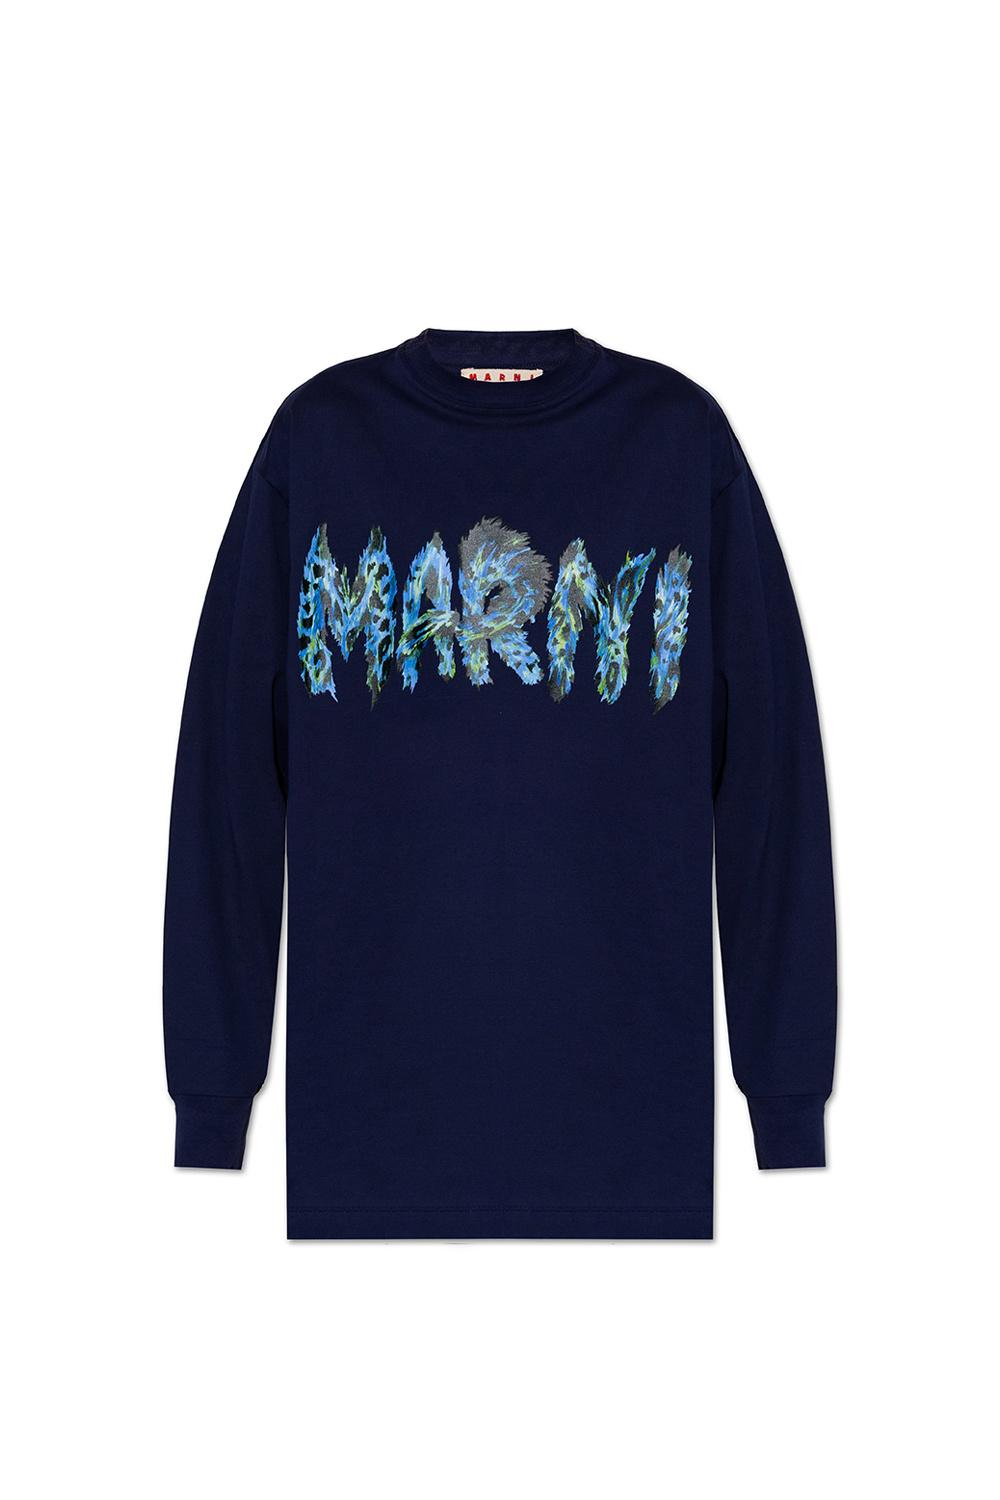 Marni Long-sleeved T-shirt